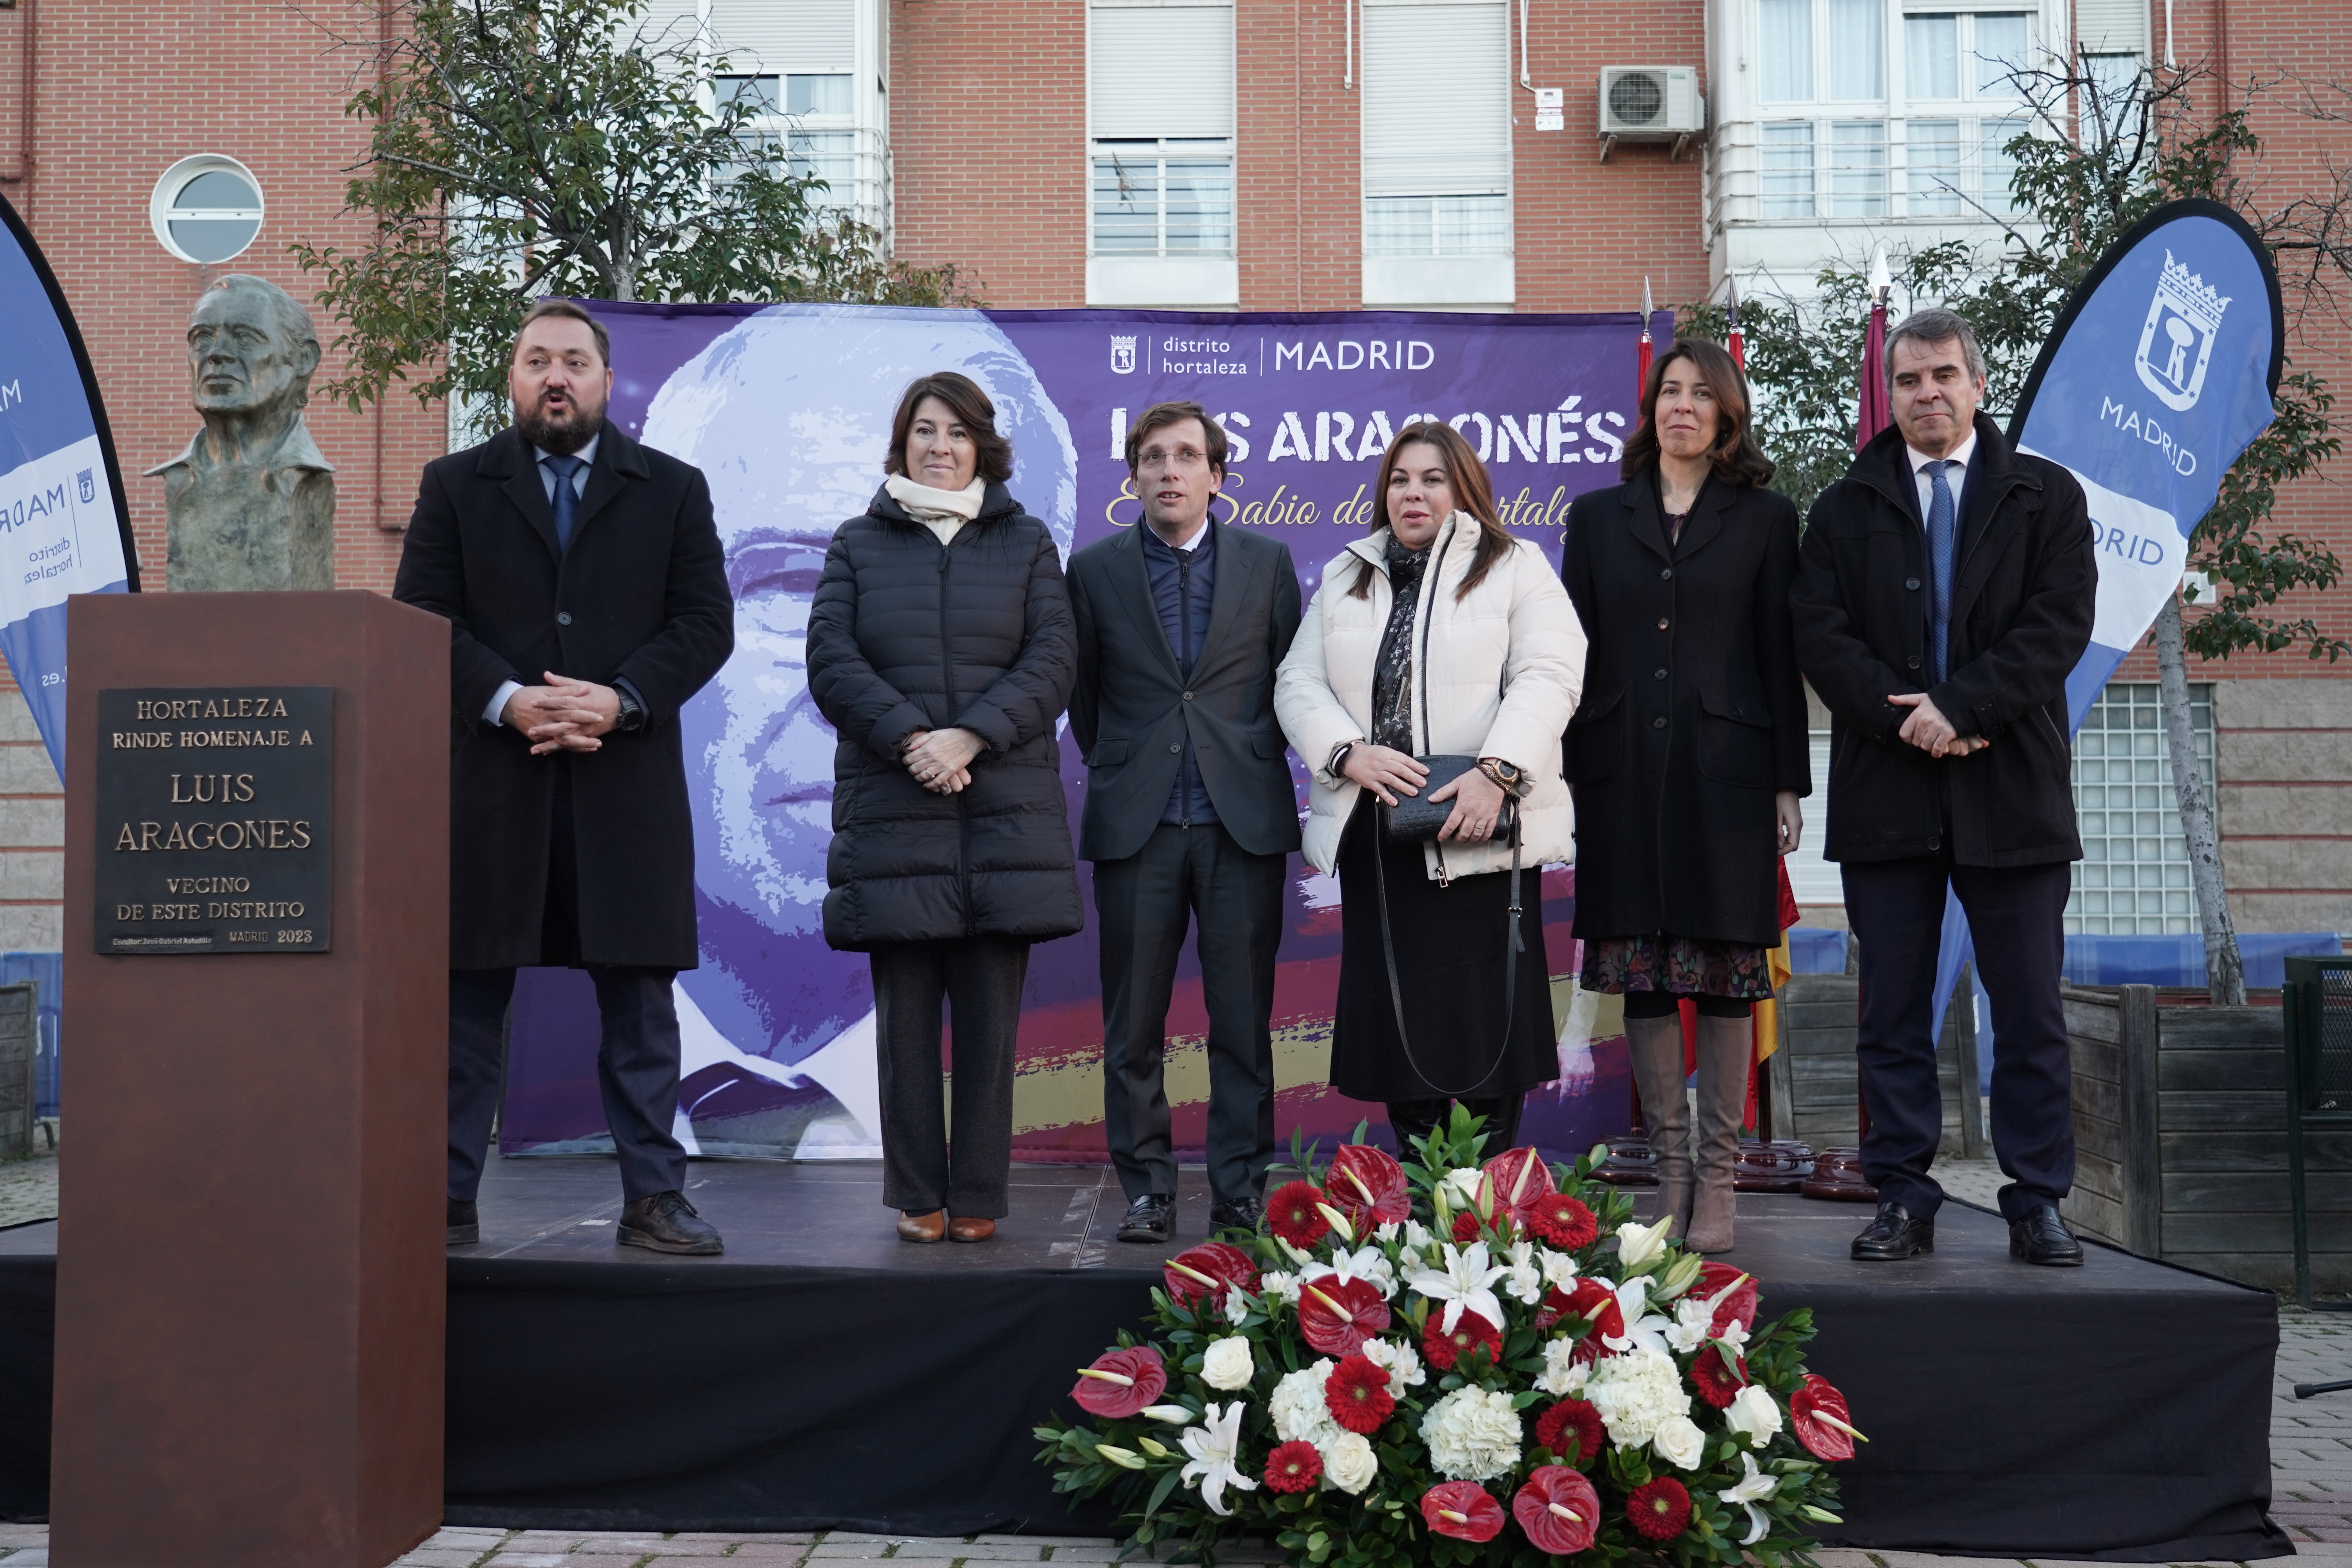 El alcalde, José Luis Martínez-Almeida, durante el homenaje a Luis Aragonés en Hortaleza